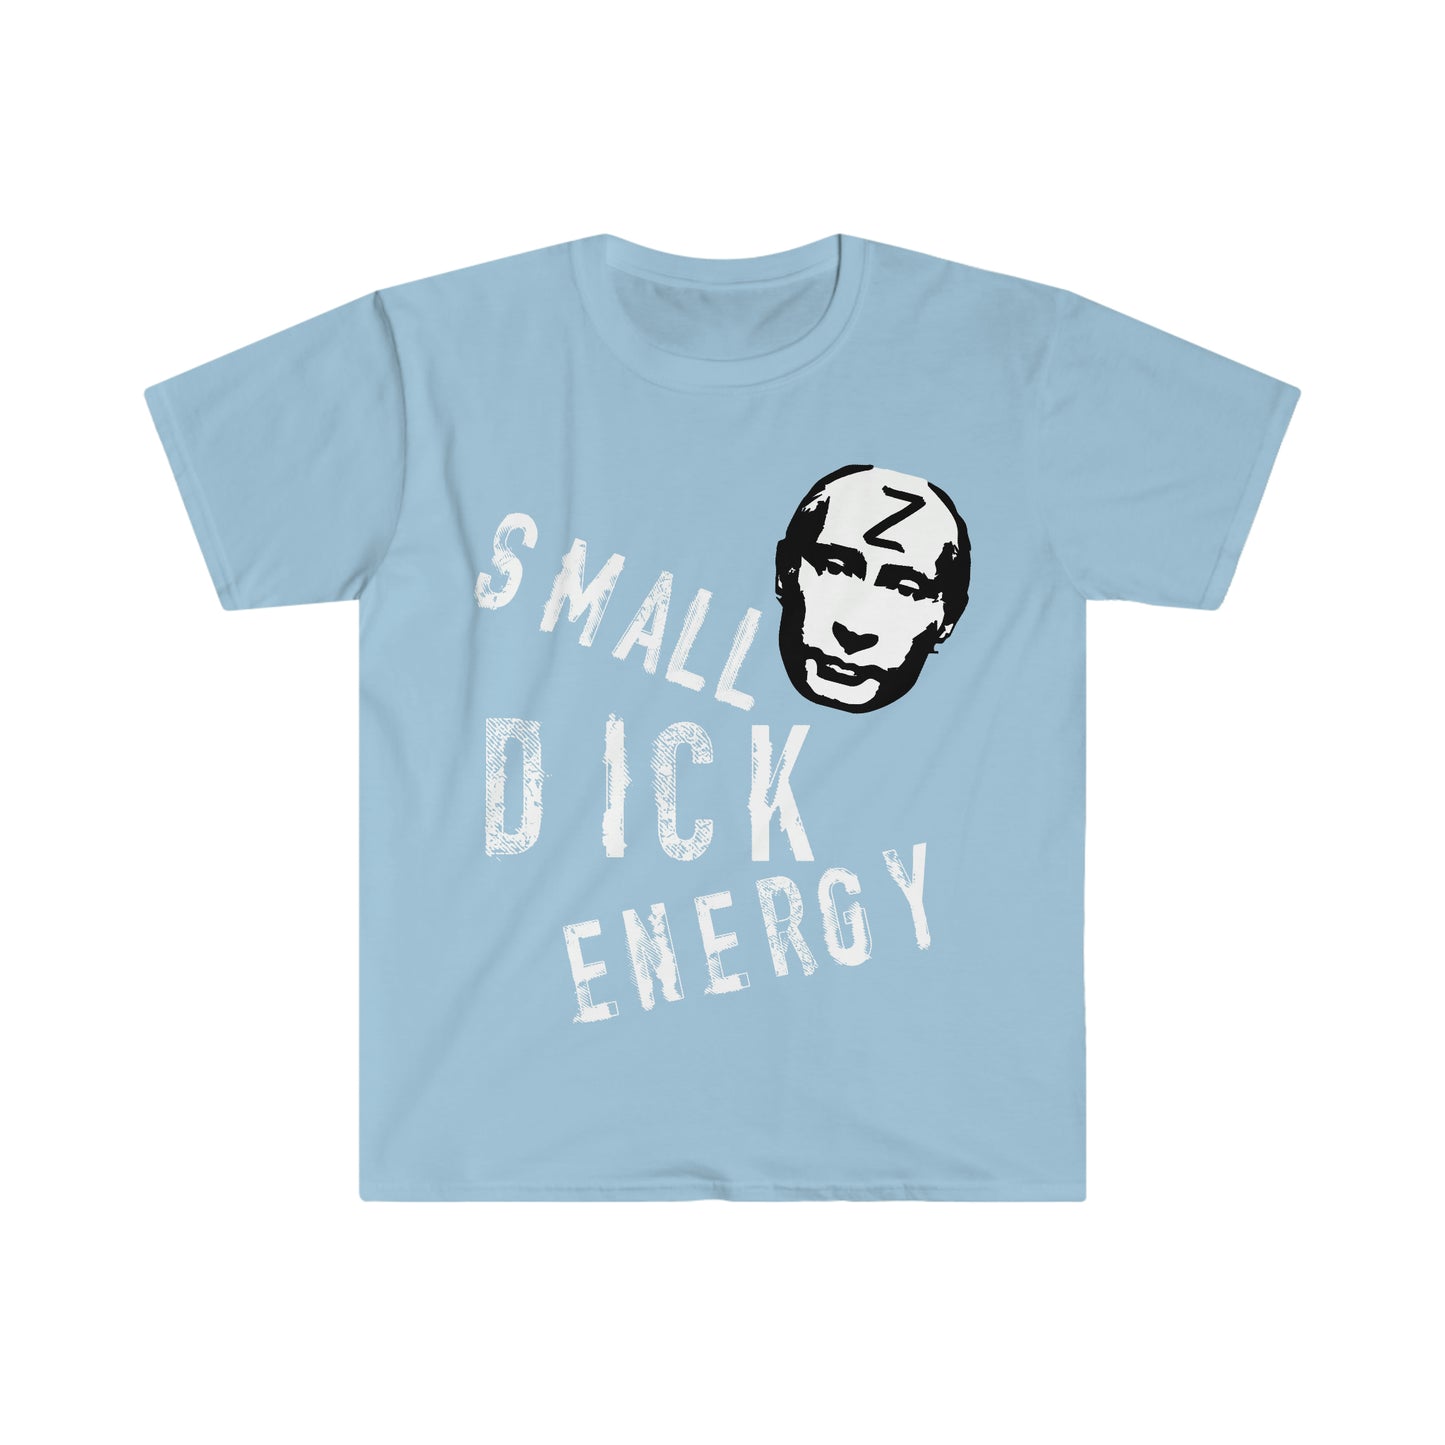 Small D*ck Energy T-shirt